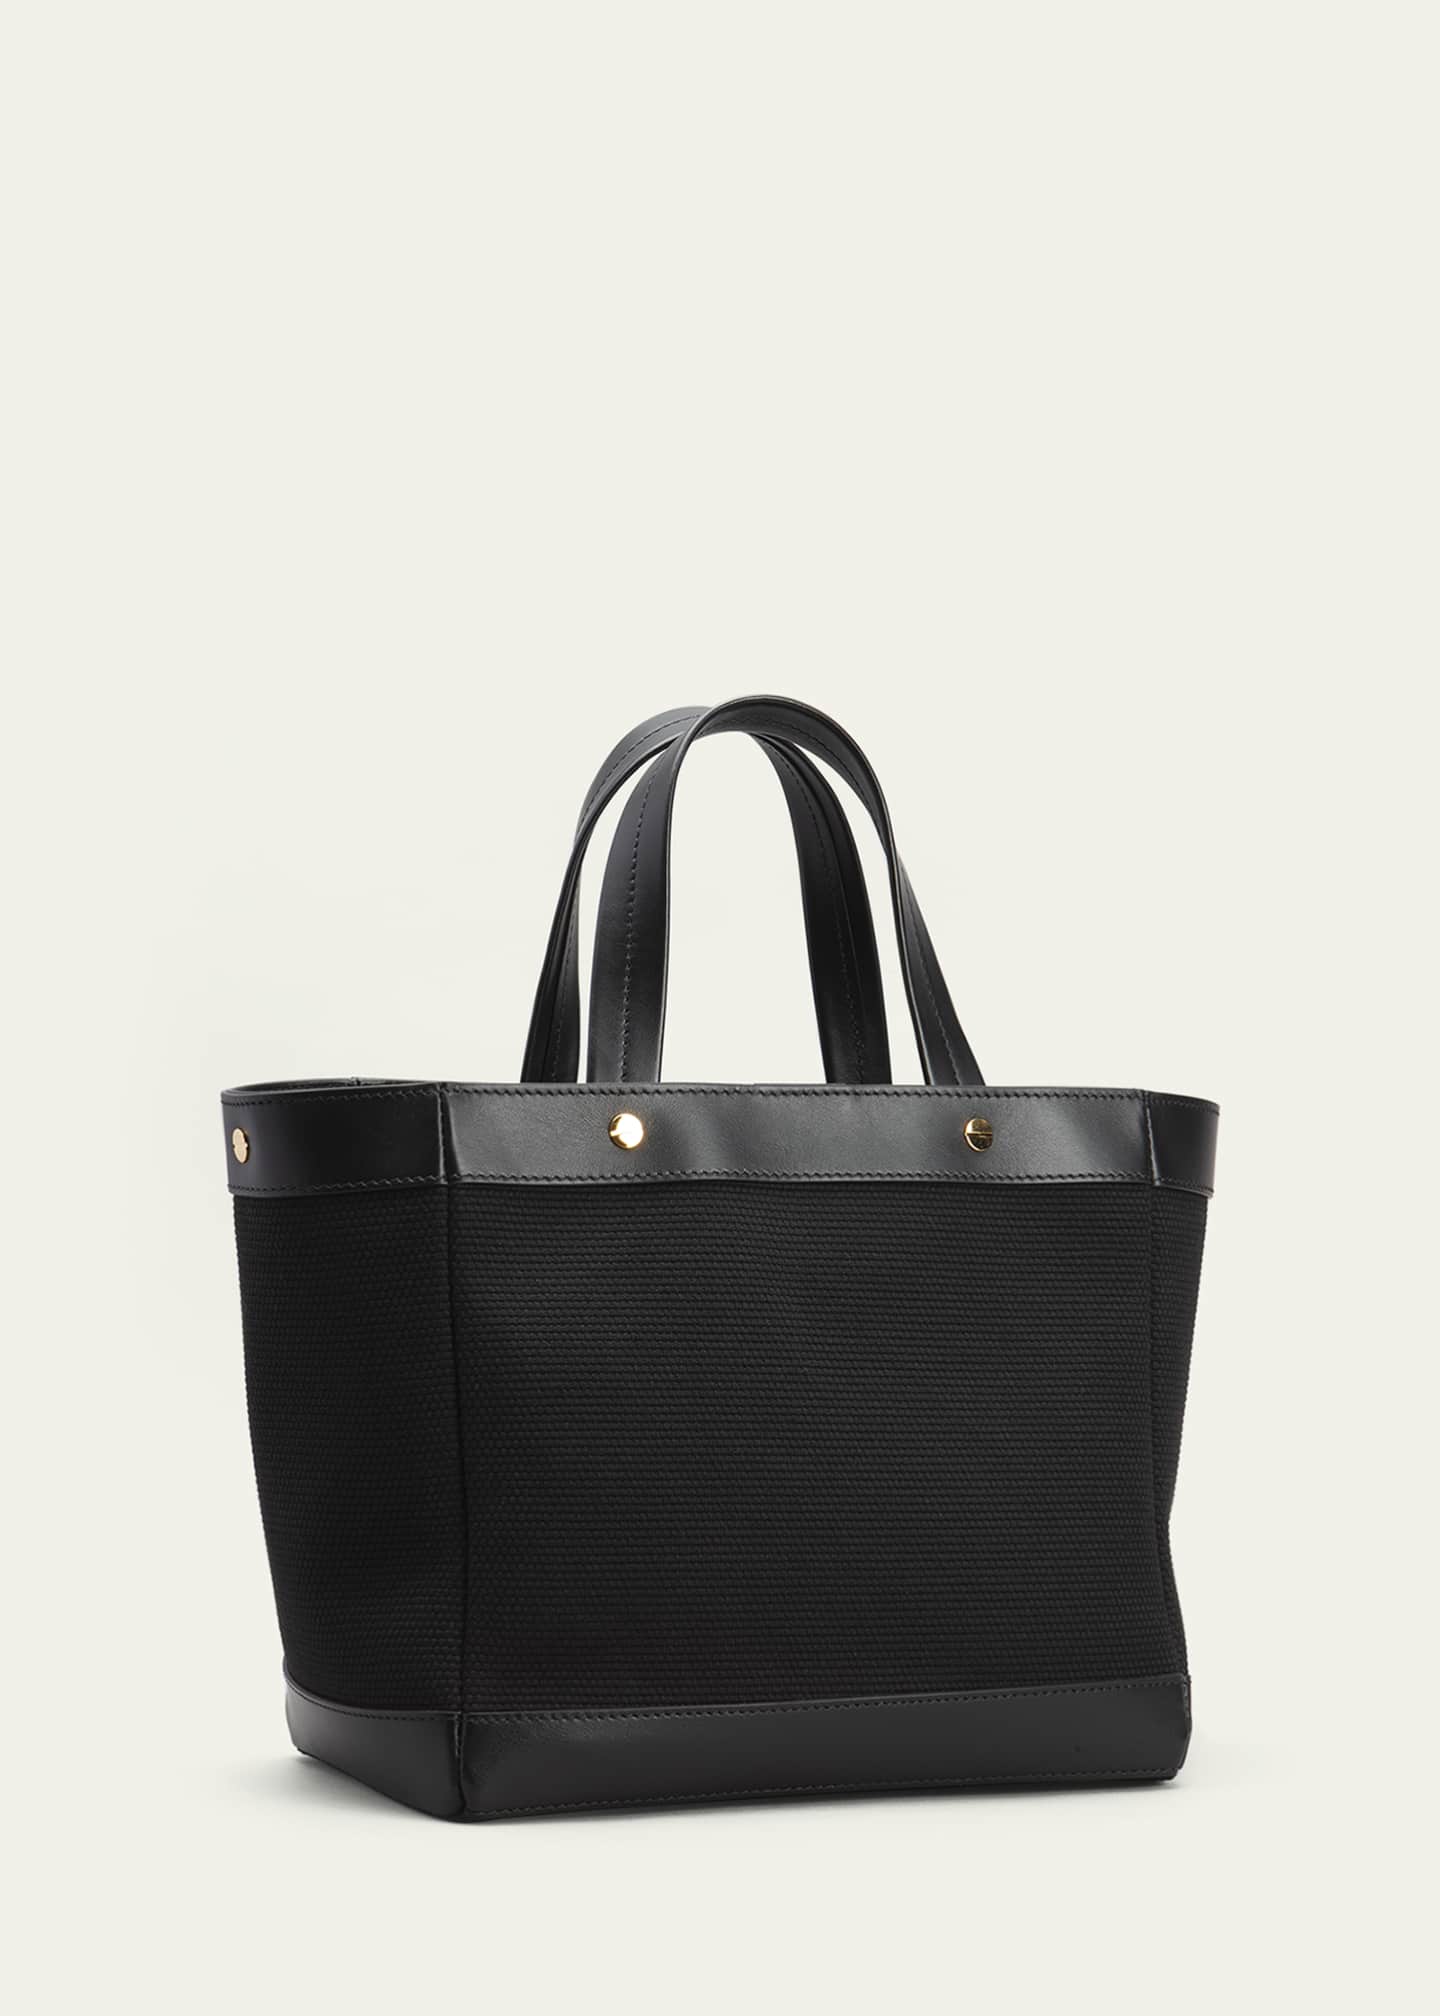 Dark Brown Shoulder Bag by Tom Ford for rent online